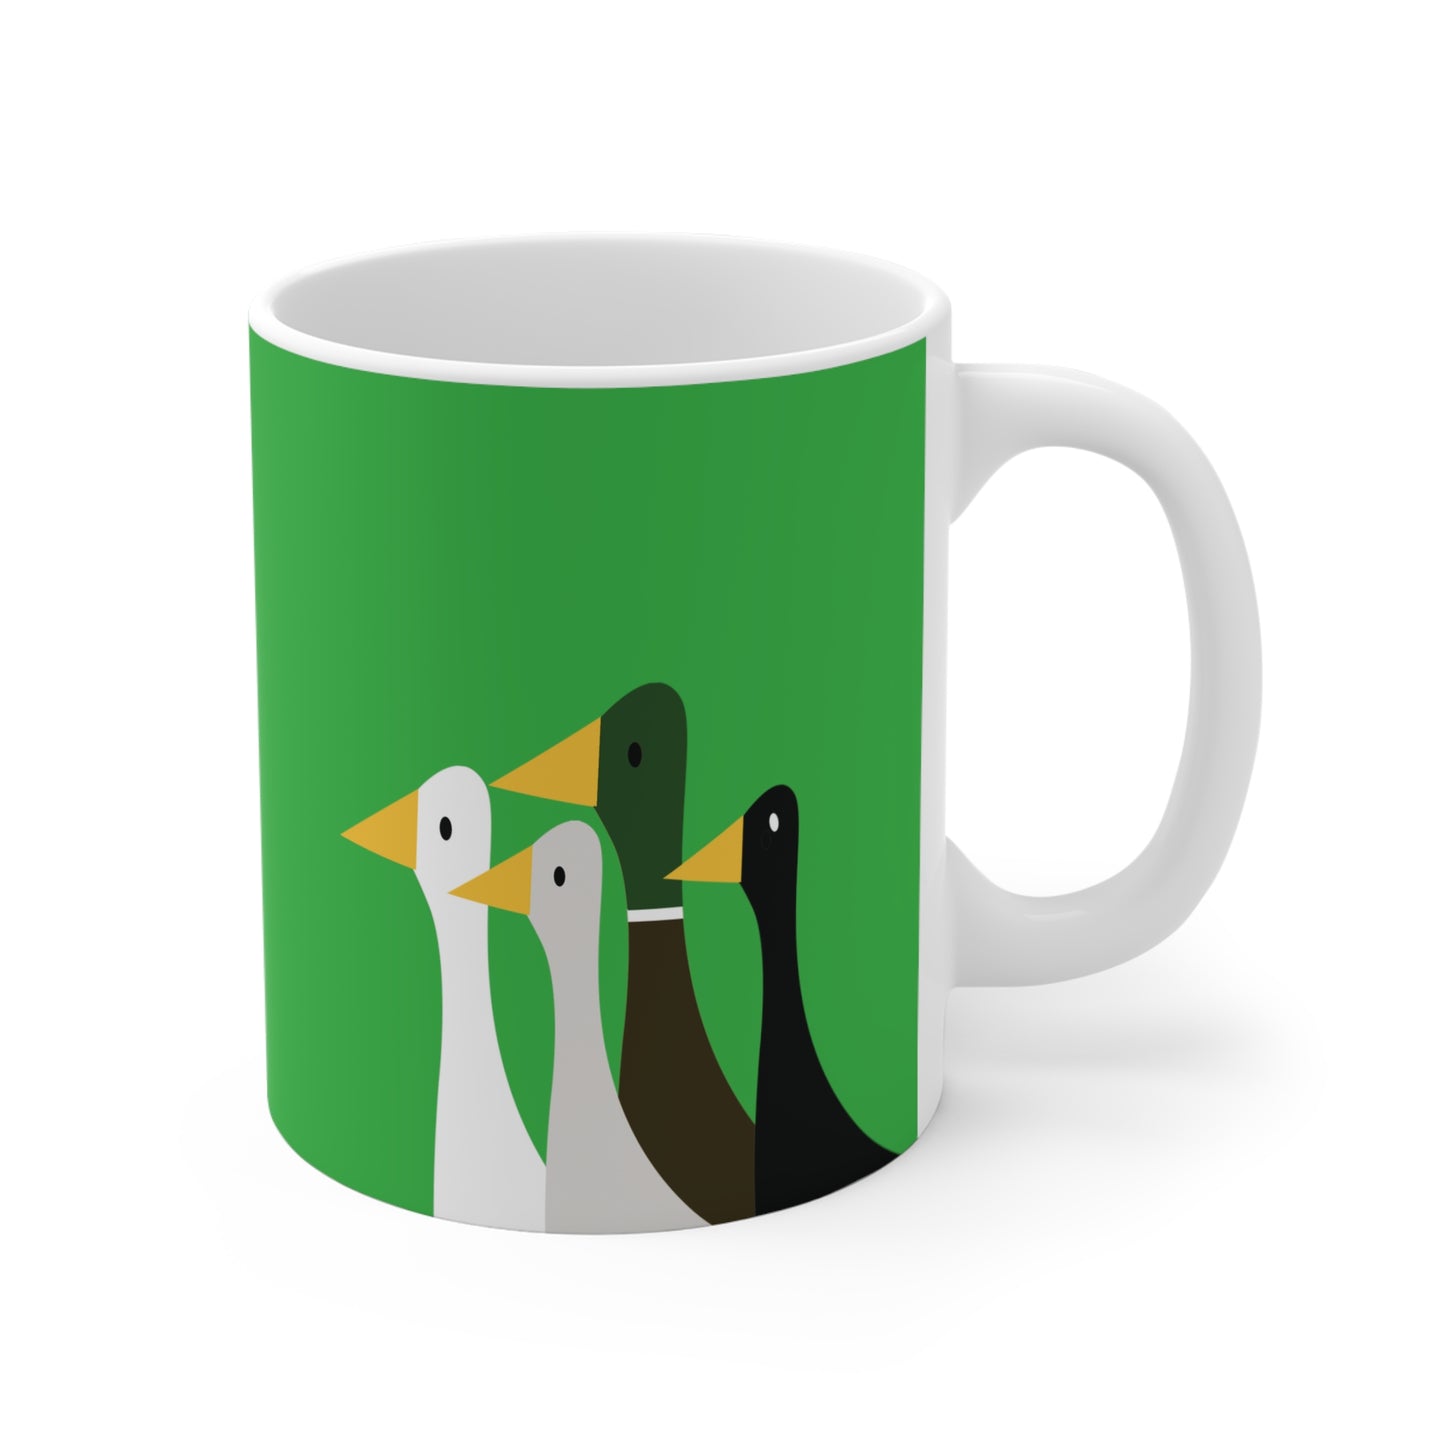 Take the ducks with you - Lime Green 21C12E  - Mug 11oz